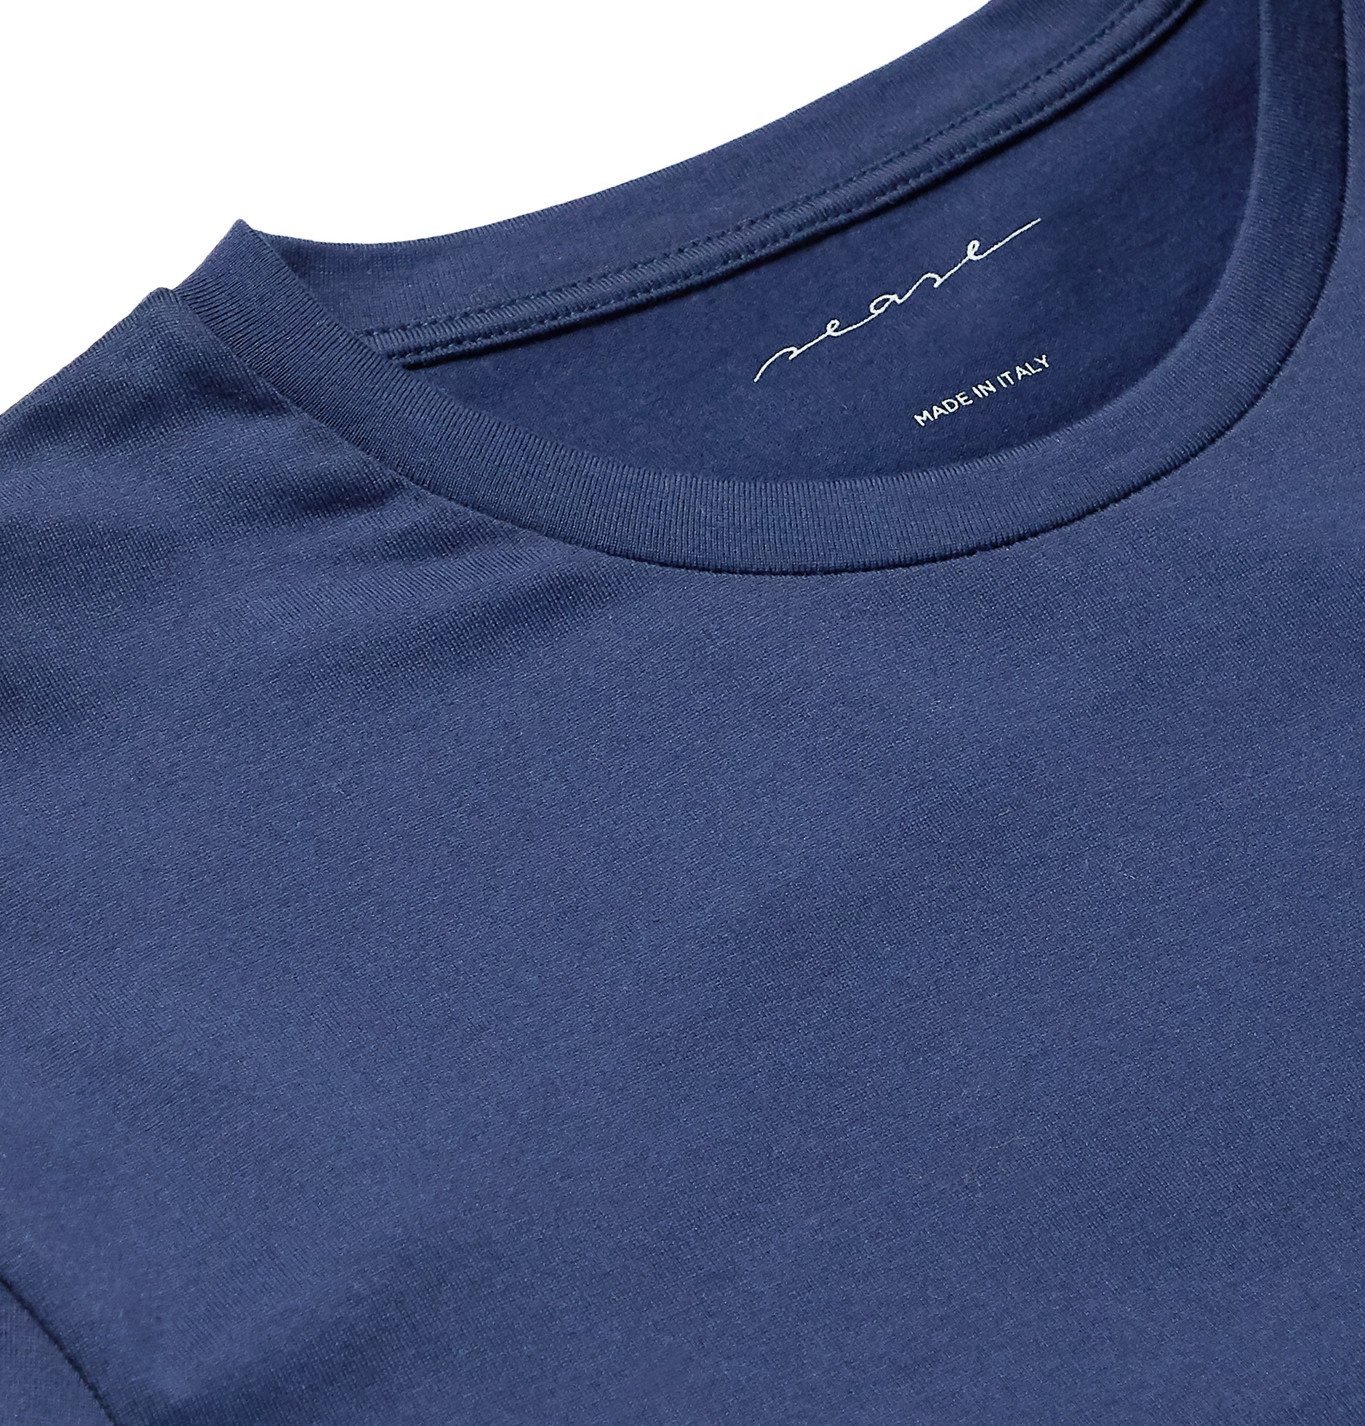 Sease - Logo-Print Cotton-Blend Jersey T-Shirt - Blue Sease